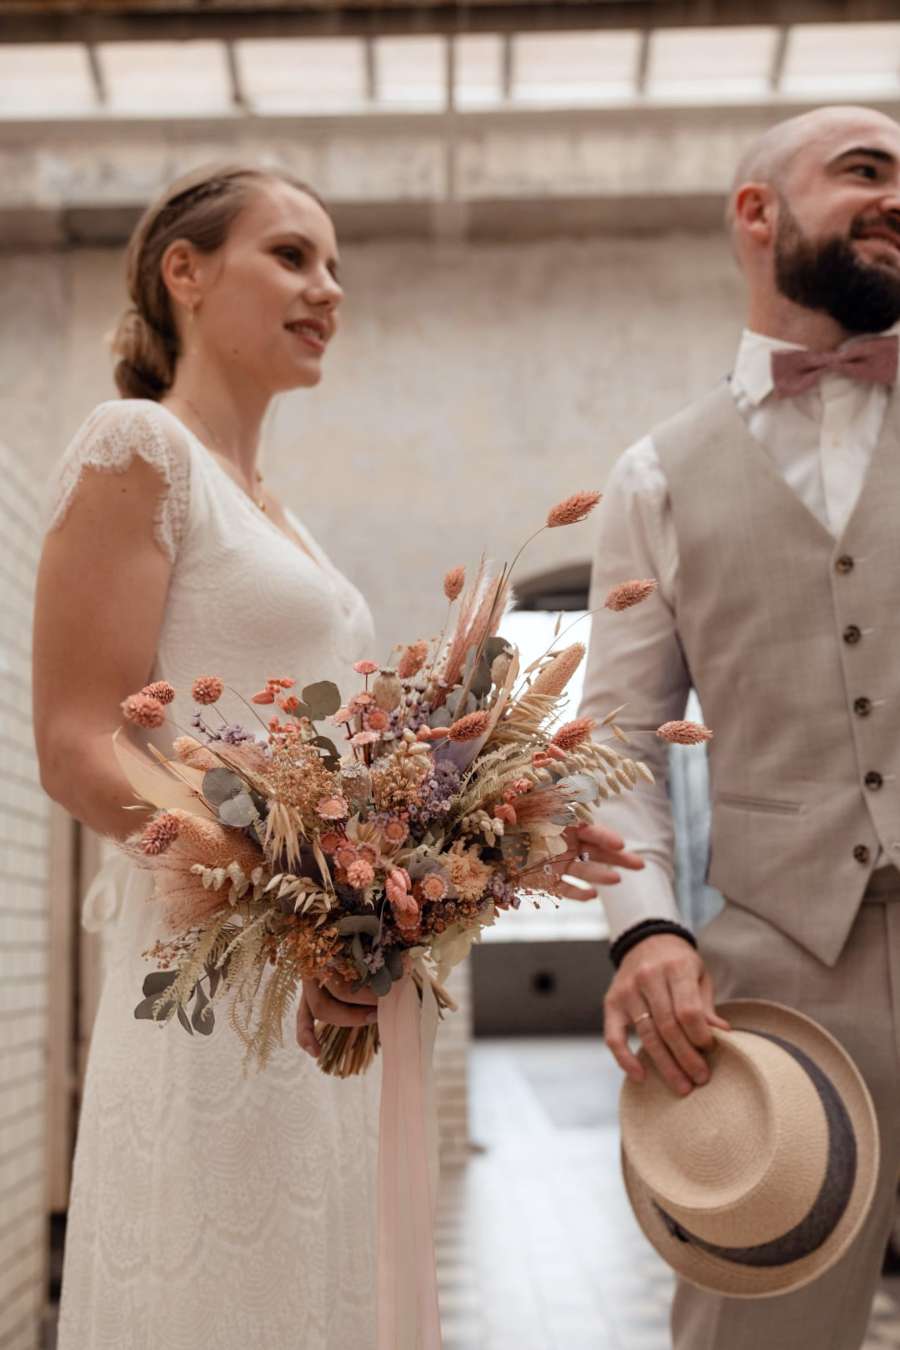 Custom Bridal Bouquet - Medium